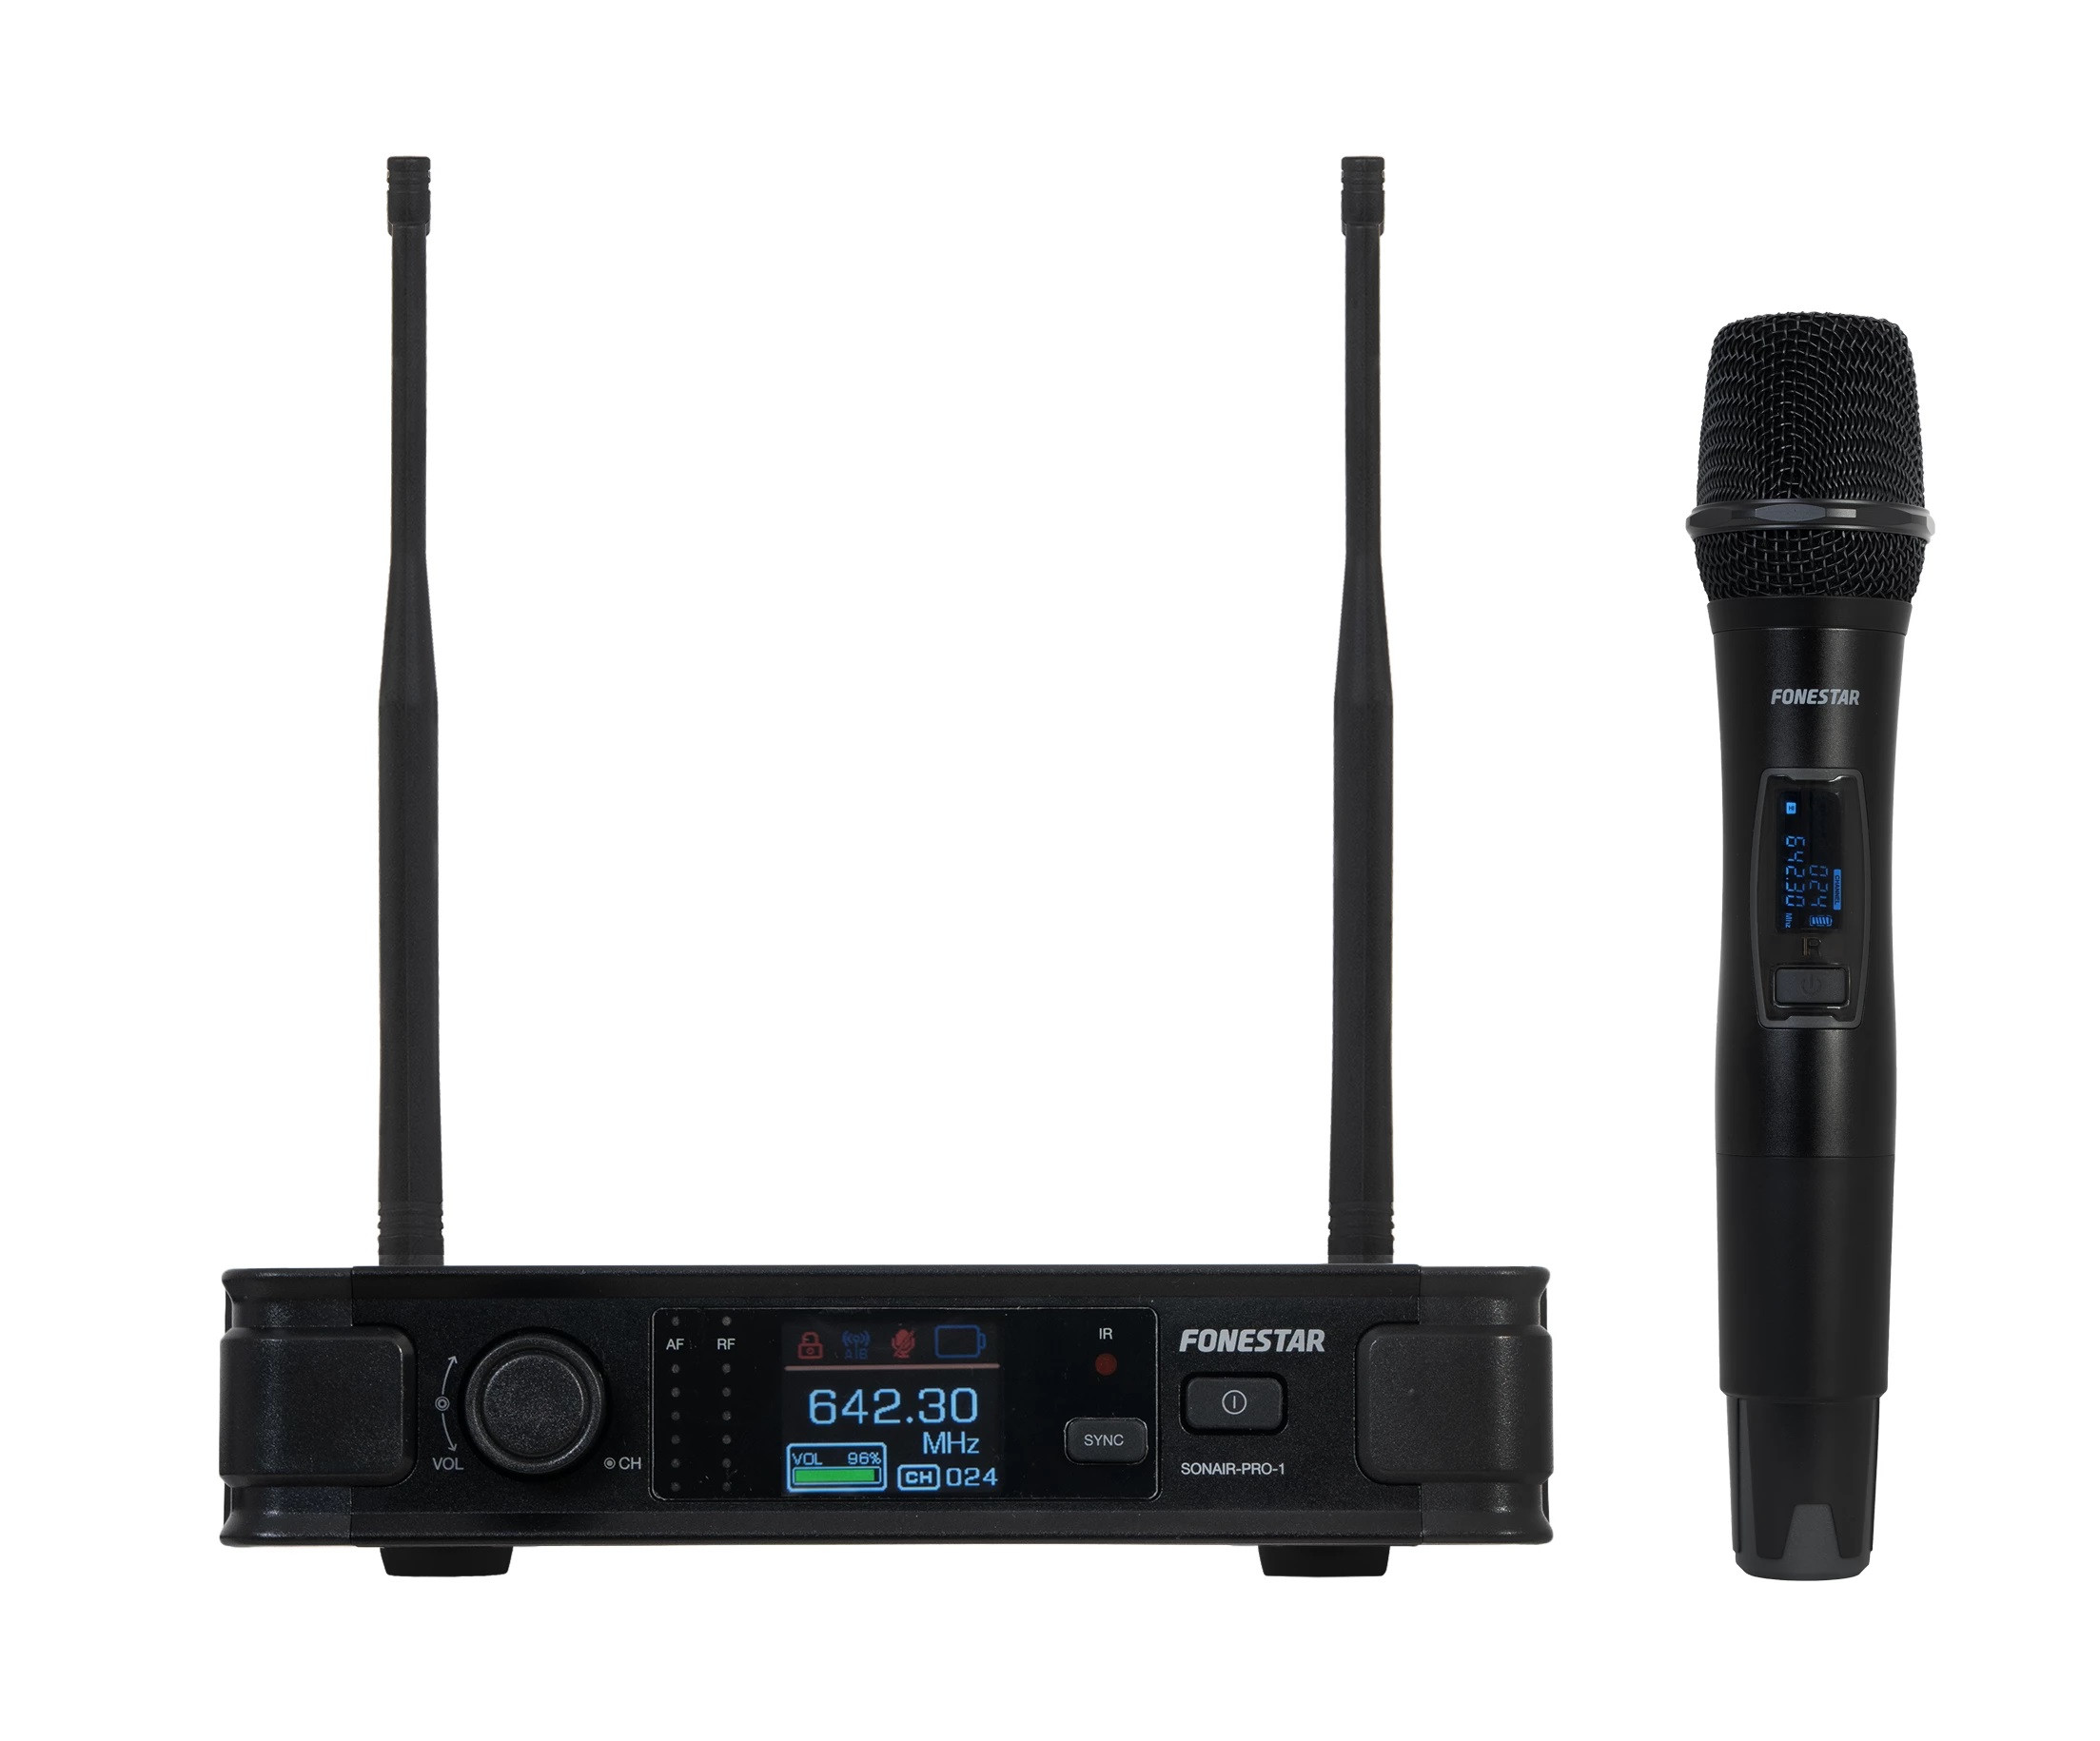 SONAIR-2M Système double microphone UHF sans fil FONESTAR